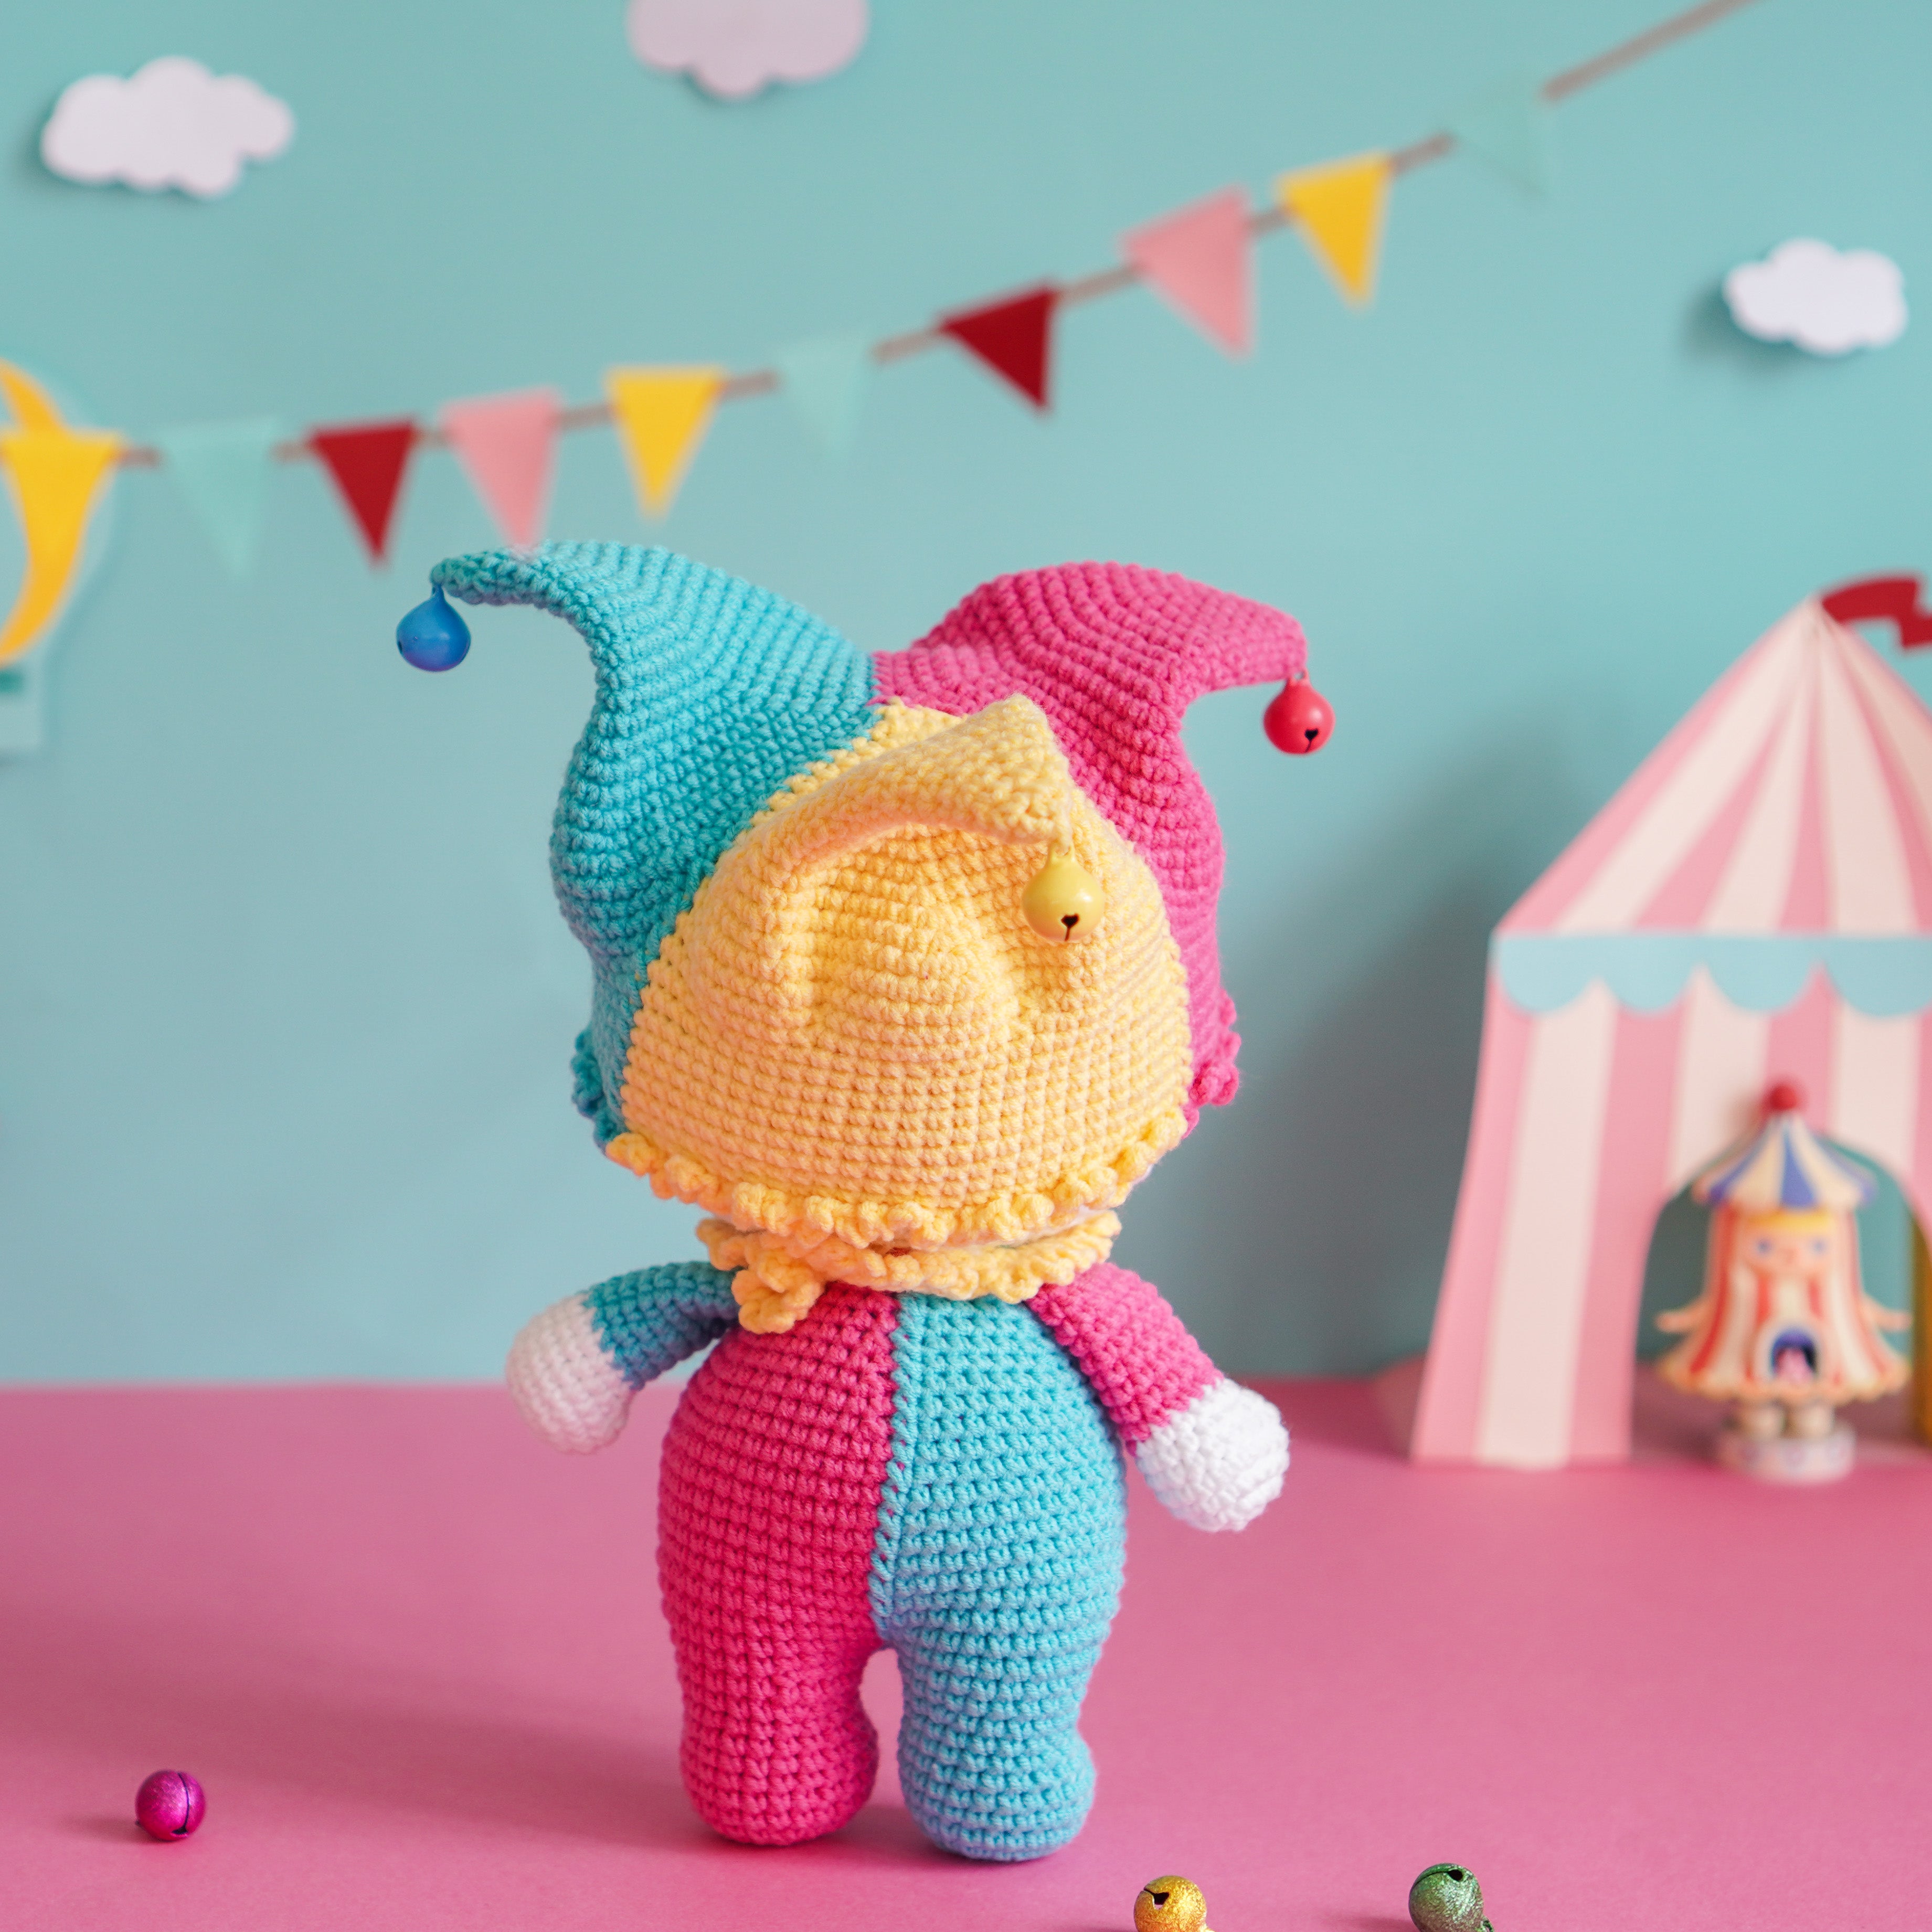 Sad Clown Crochet Pattern by Aquariwool Crochet (Crochet Doll Pattern/Amigurumi Pattern for Baby gift)